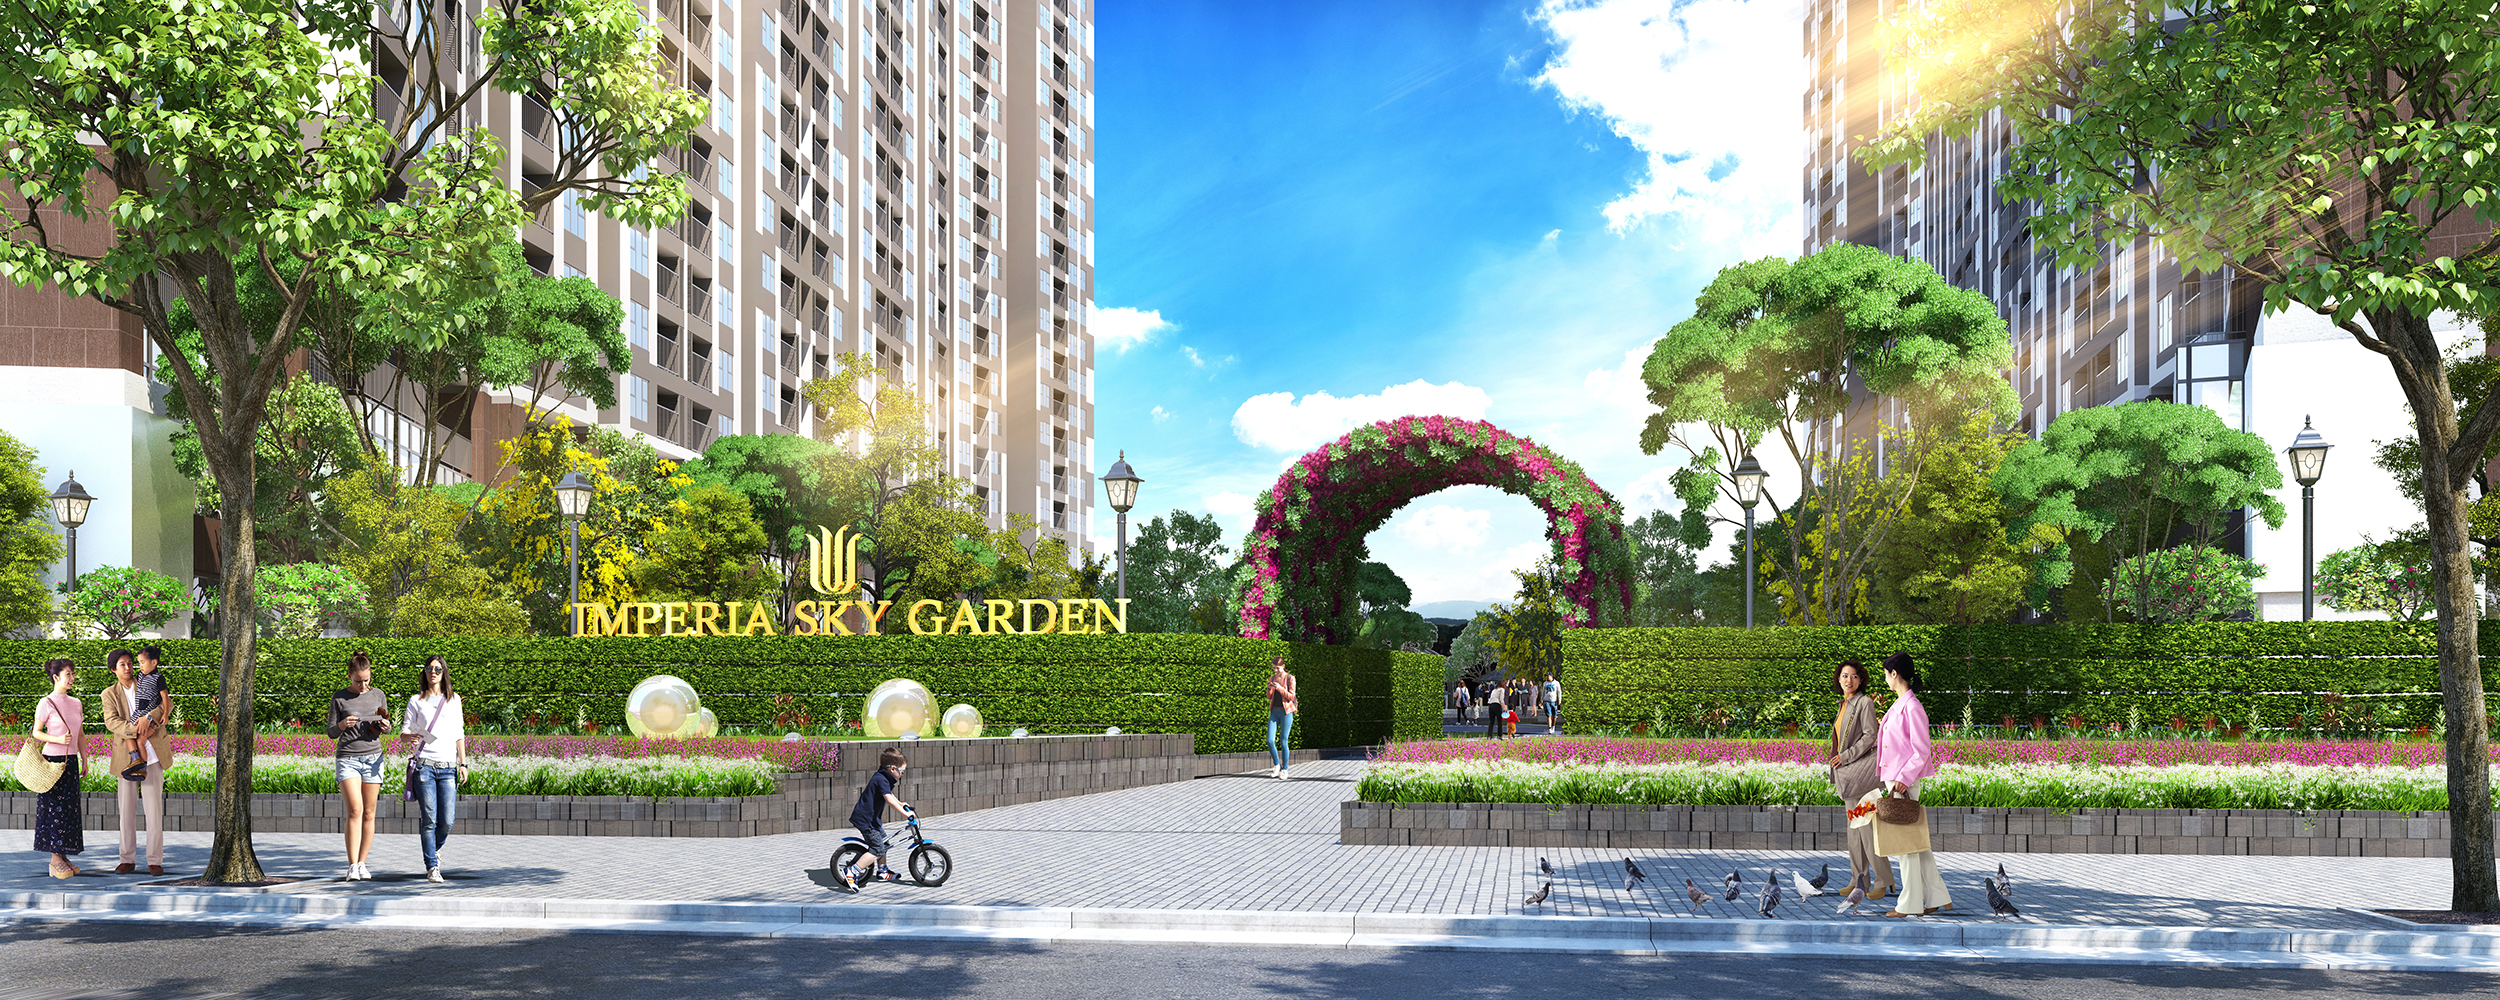 Imperia Sky Garden chính thức mở bán sau khi hoàn thành cất nóc dự án